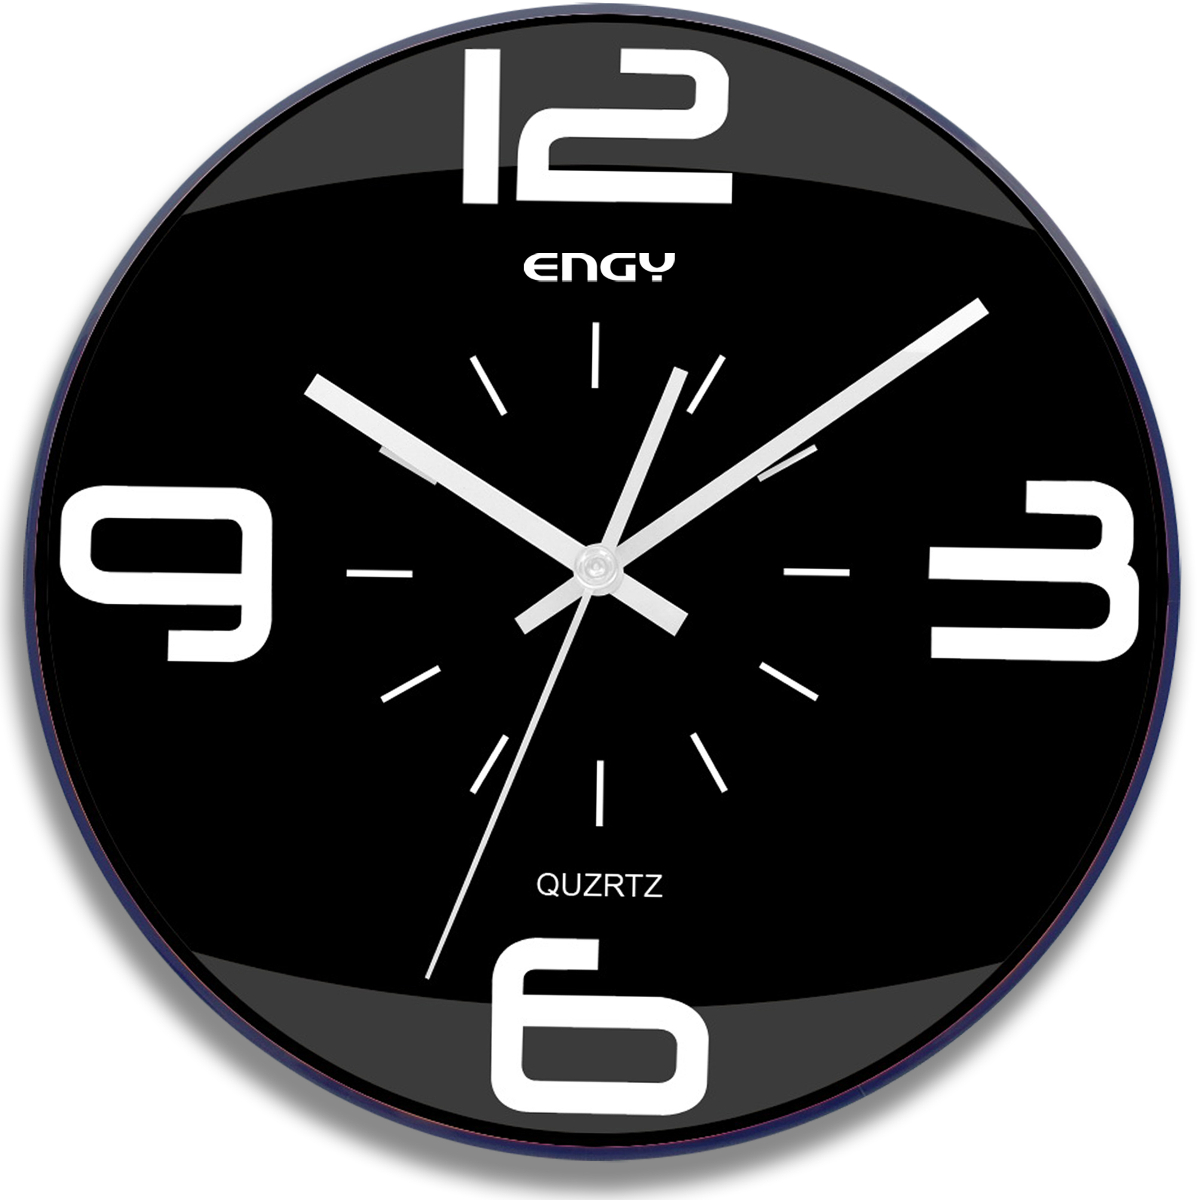 Часы Engy. Часы Engy EC-16. Часы настенные ЕС-06. Часы настенные Engy ЕС-17. Ios 17 часы